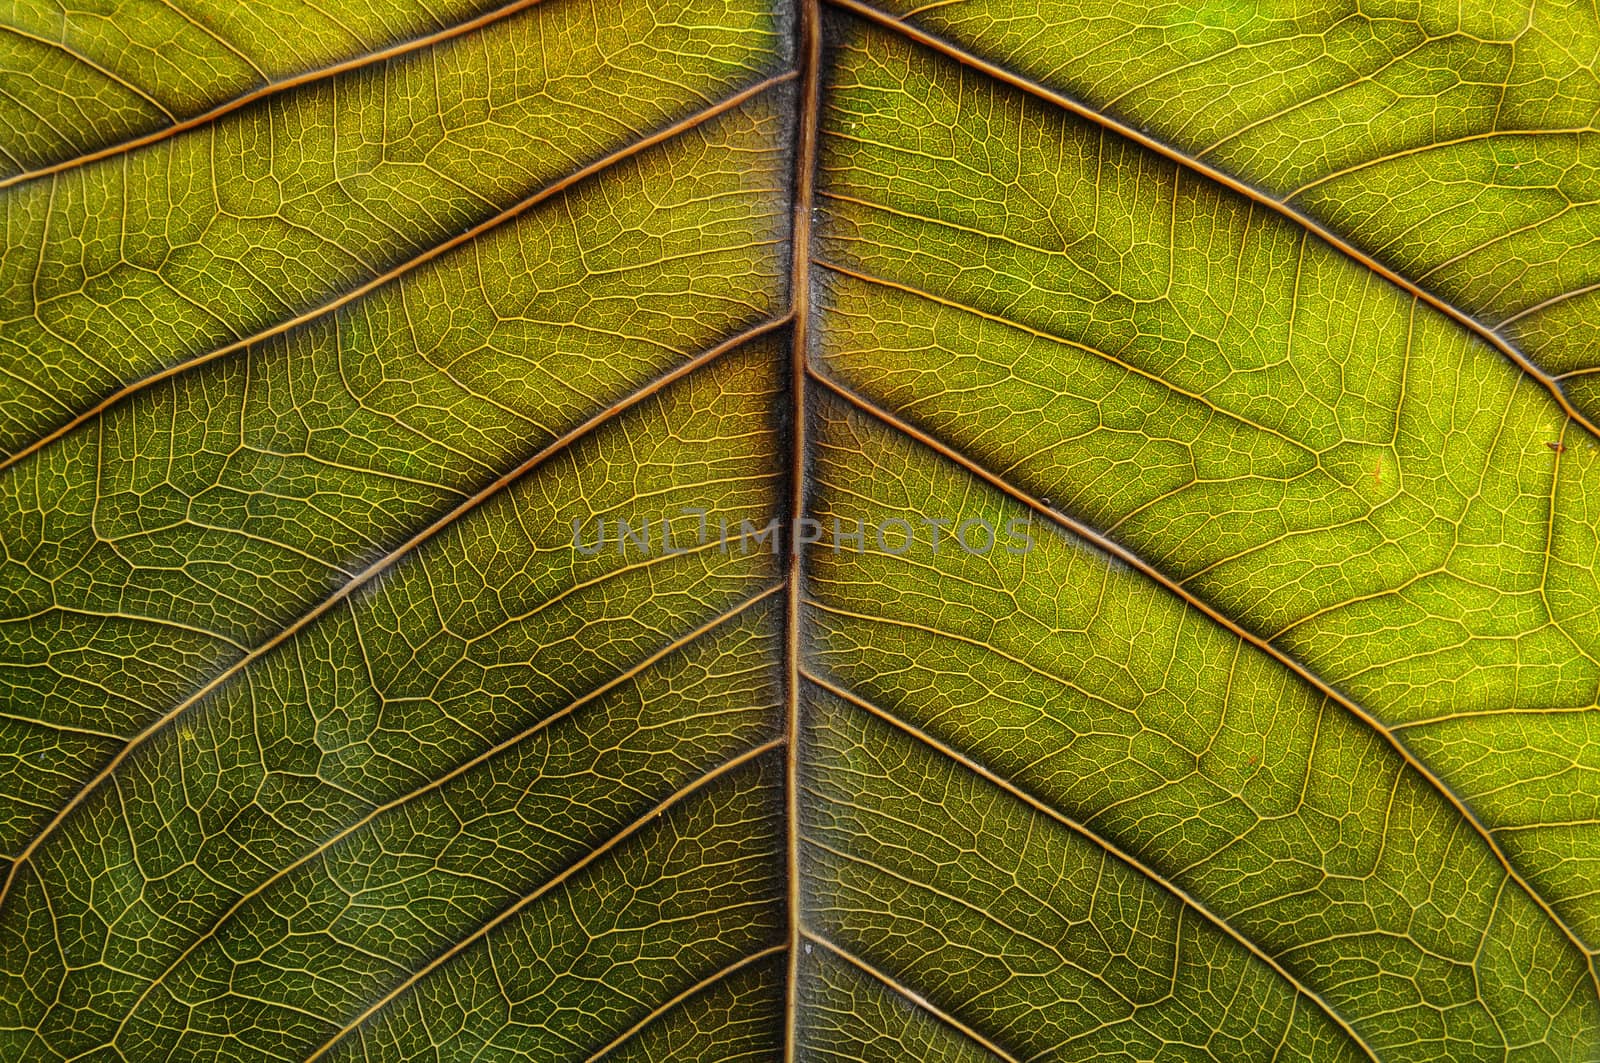 Leaf surface